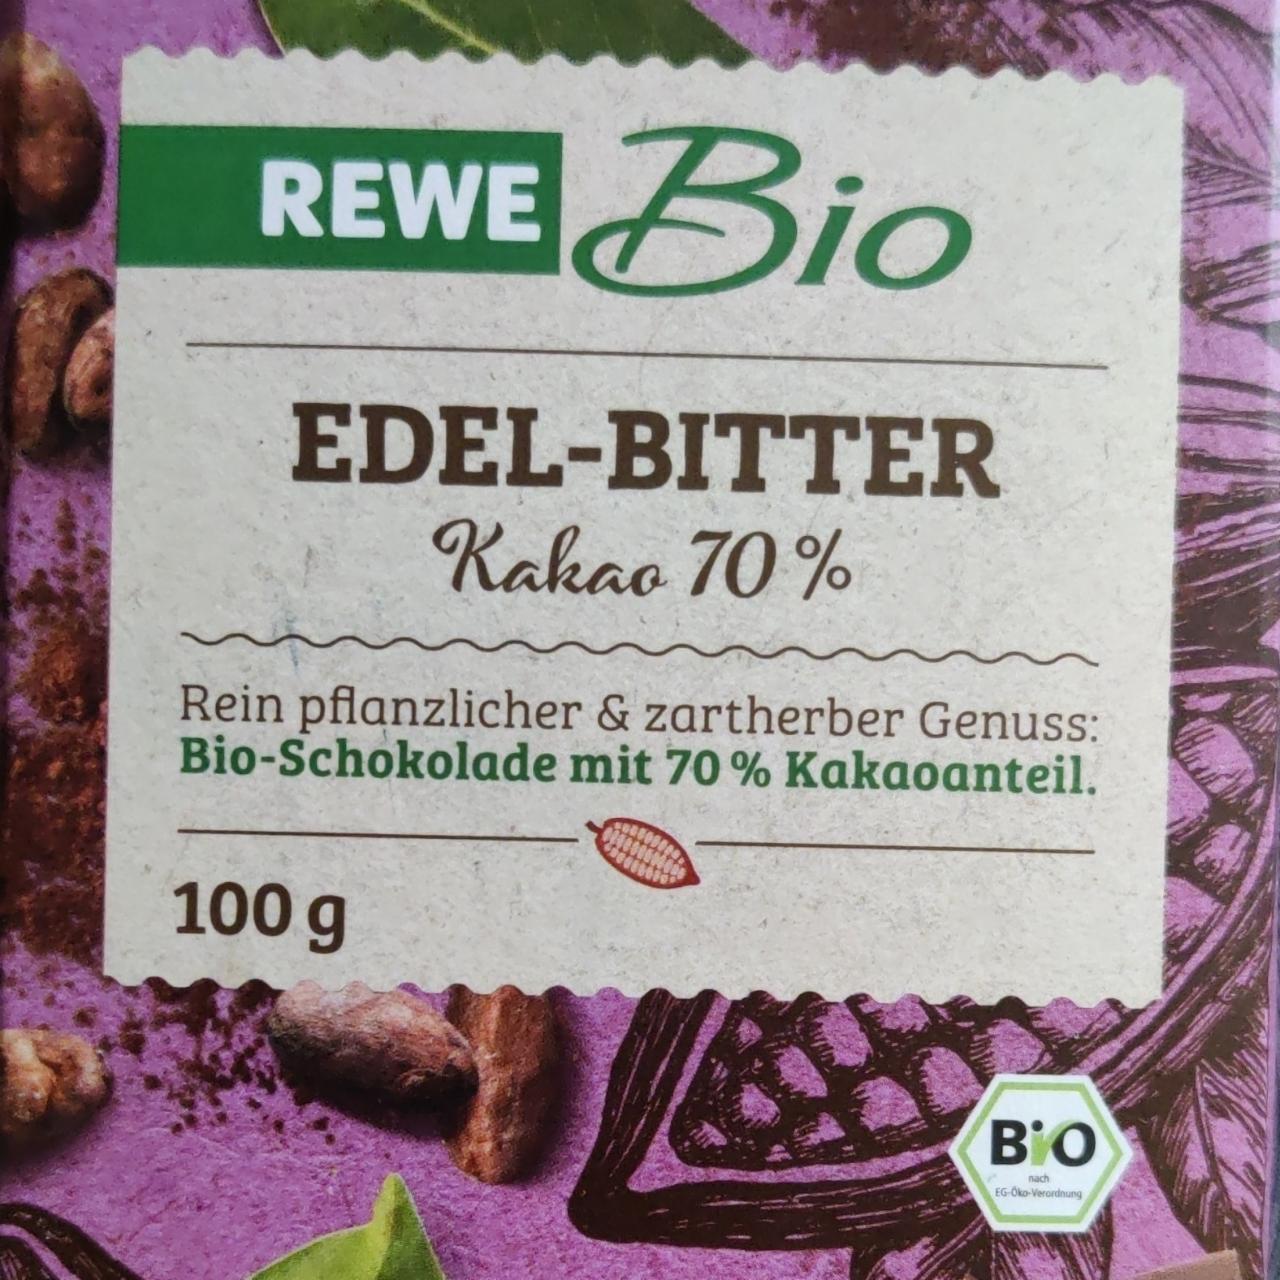 Fotografie - Edel-Bitter Kakao 70% Rewe Bio